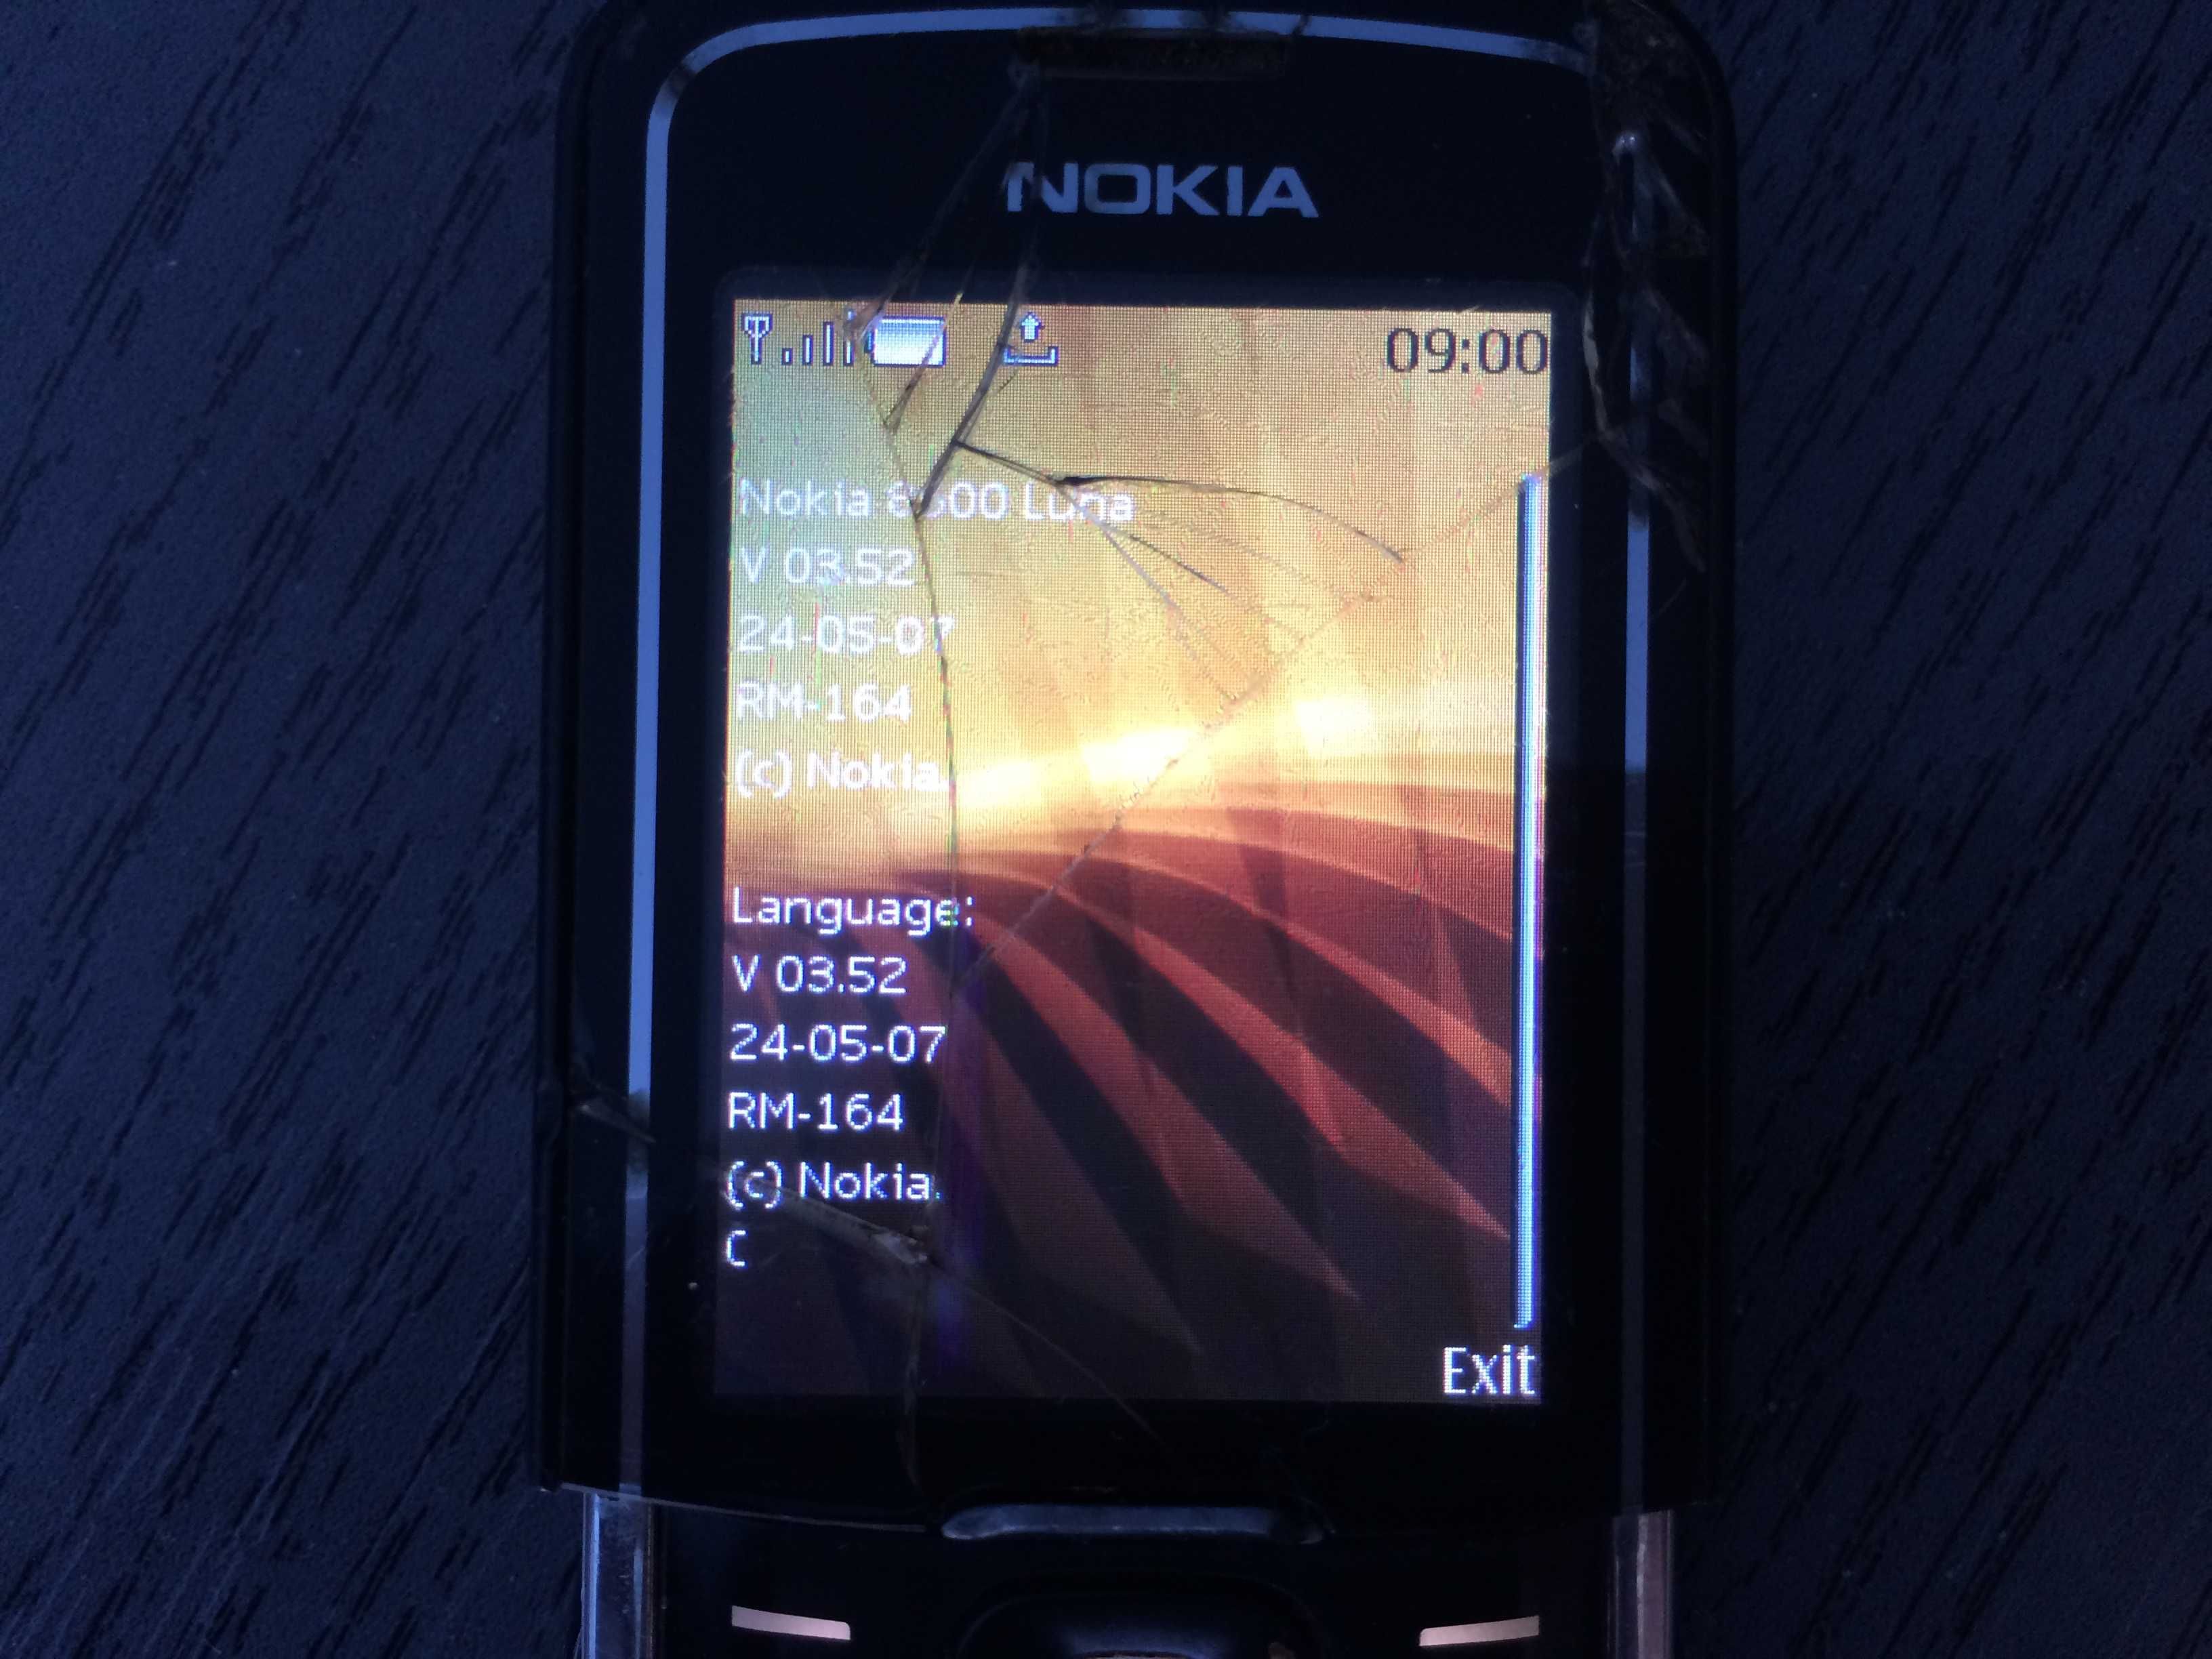 Telefon de colectie NOKIA LUNA 8600 defect.Cititi tot anuntul!